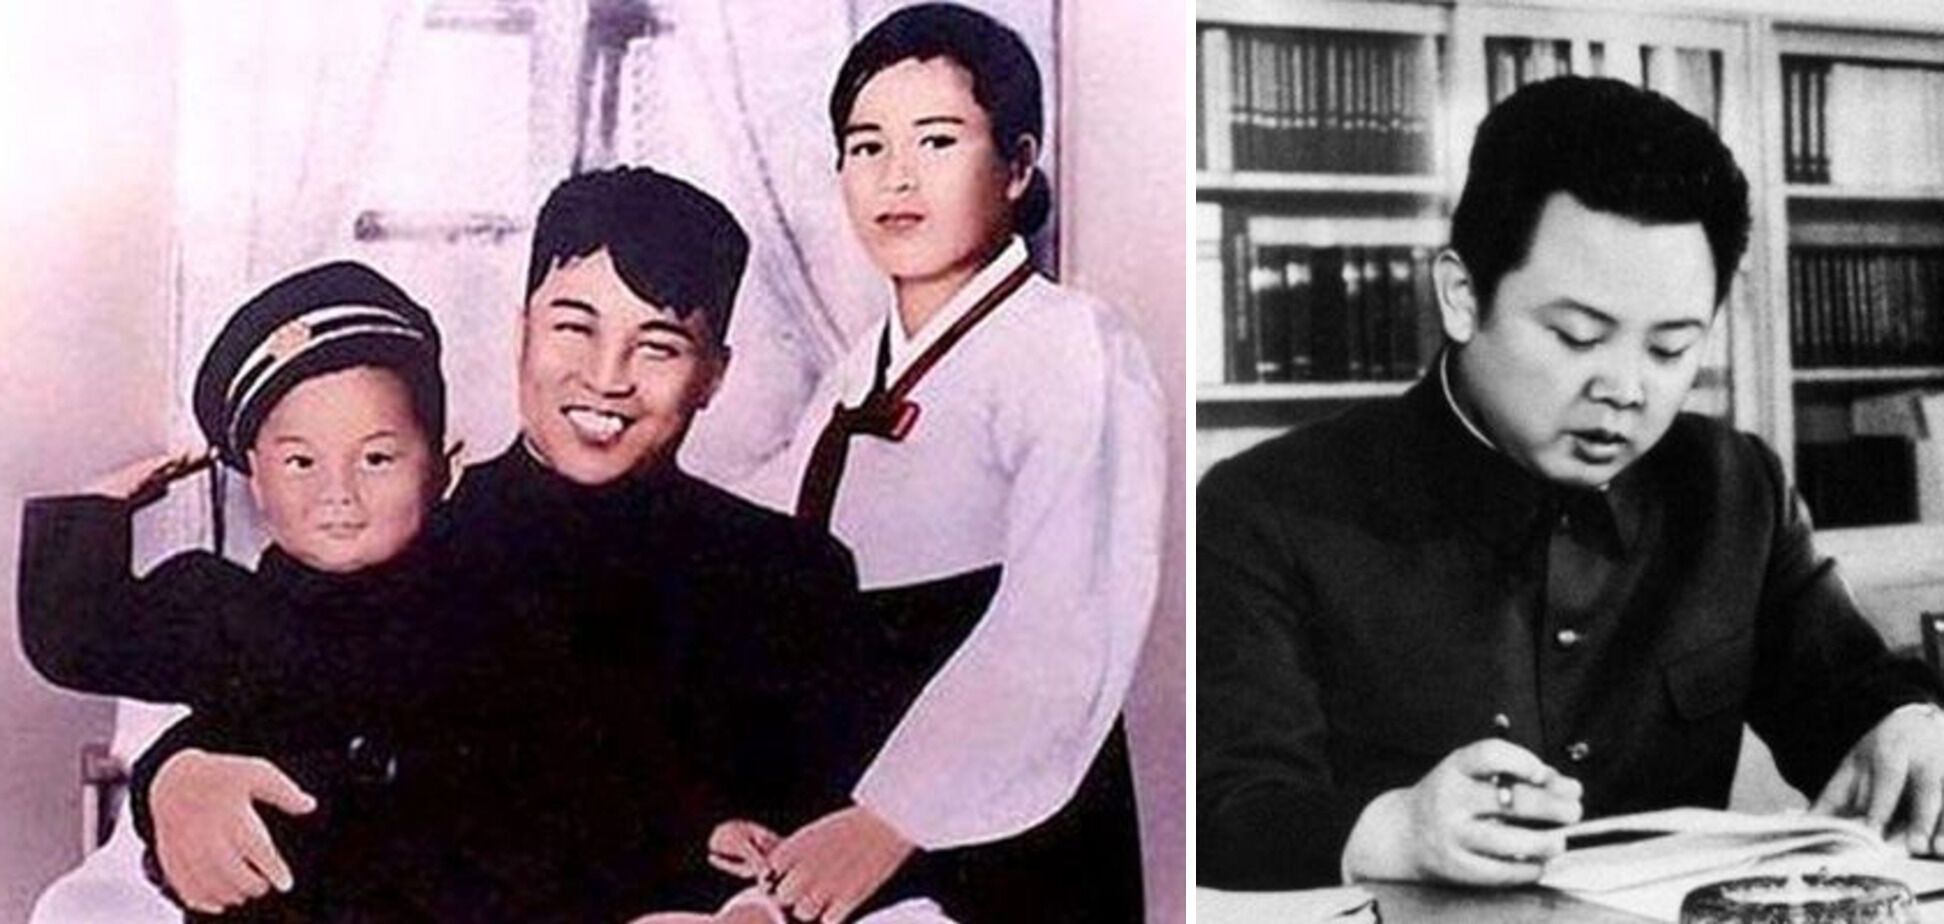 Ким Чен Ир с родителями / Ким Чен Ир во время работы в партии